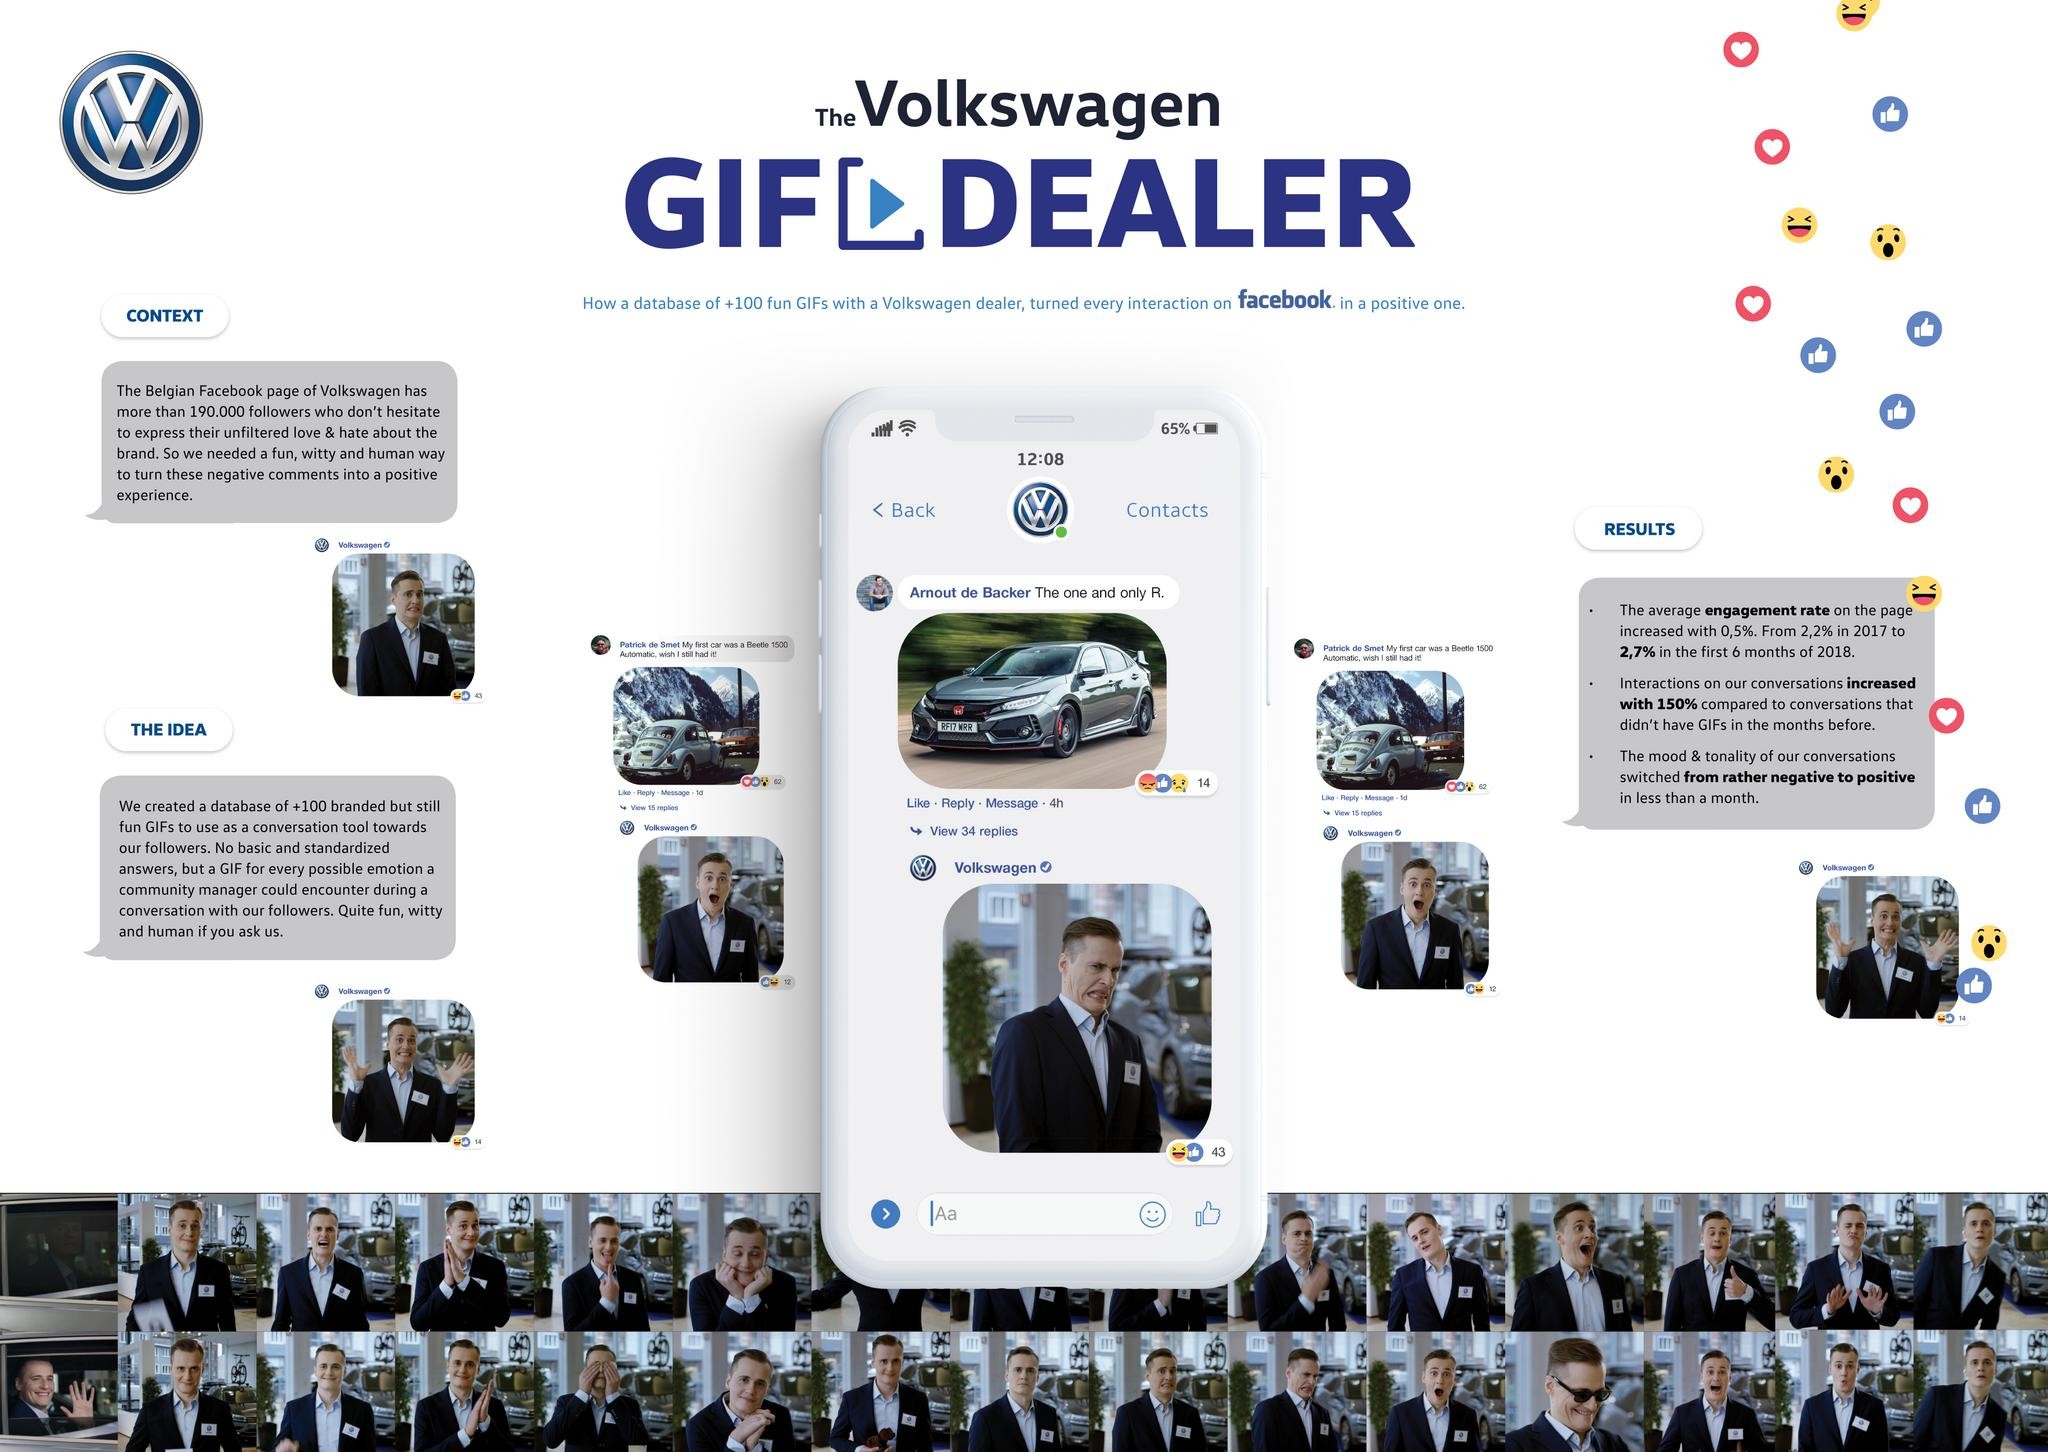 The Volkswagen GIF dealer